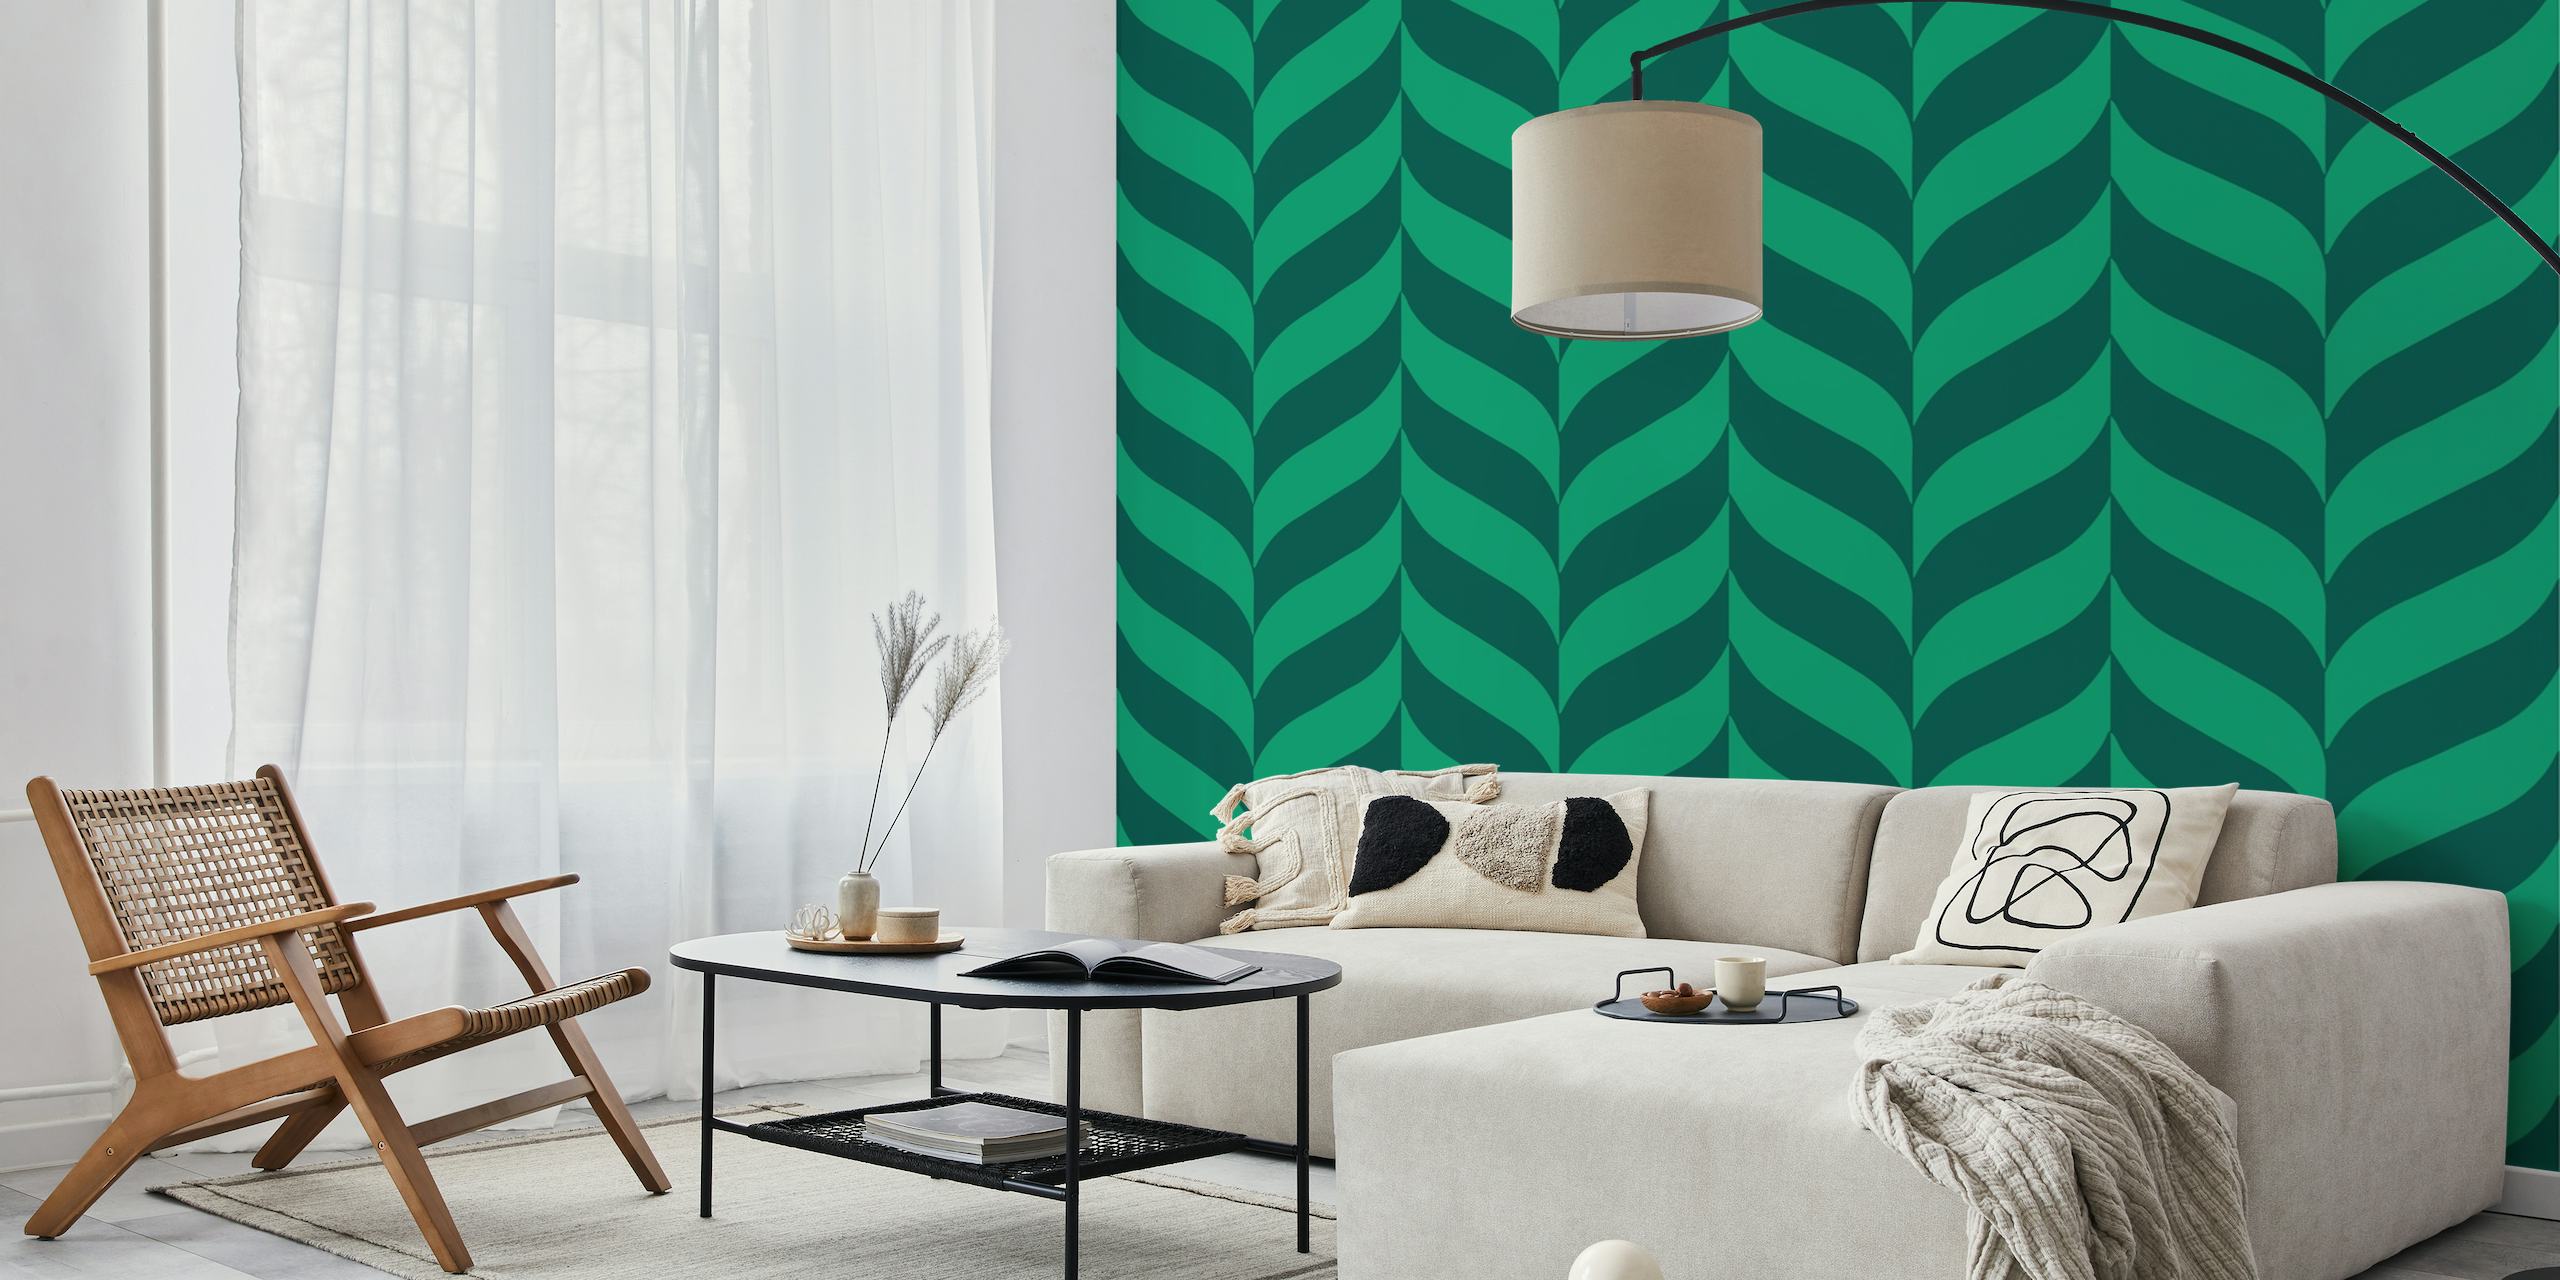 Pine green chevron pattern modern design papel pintado